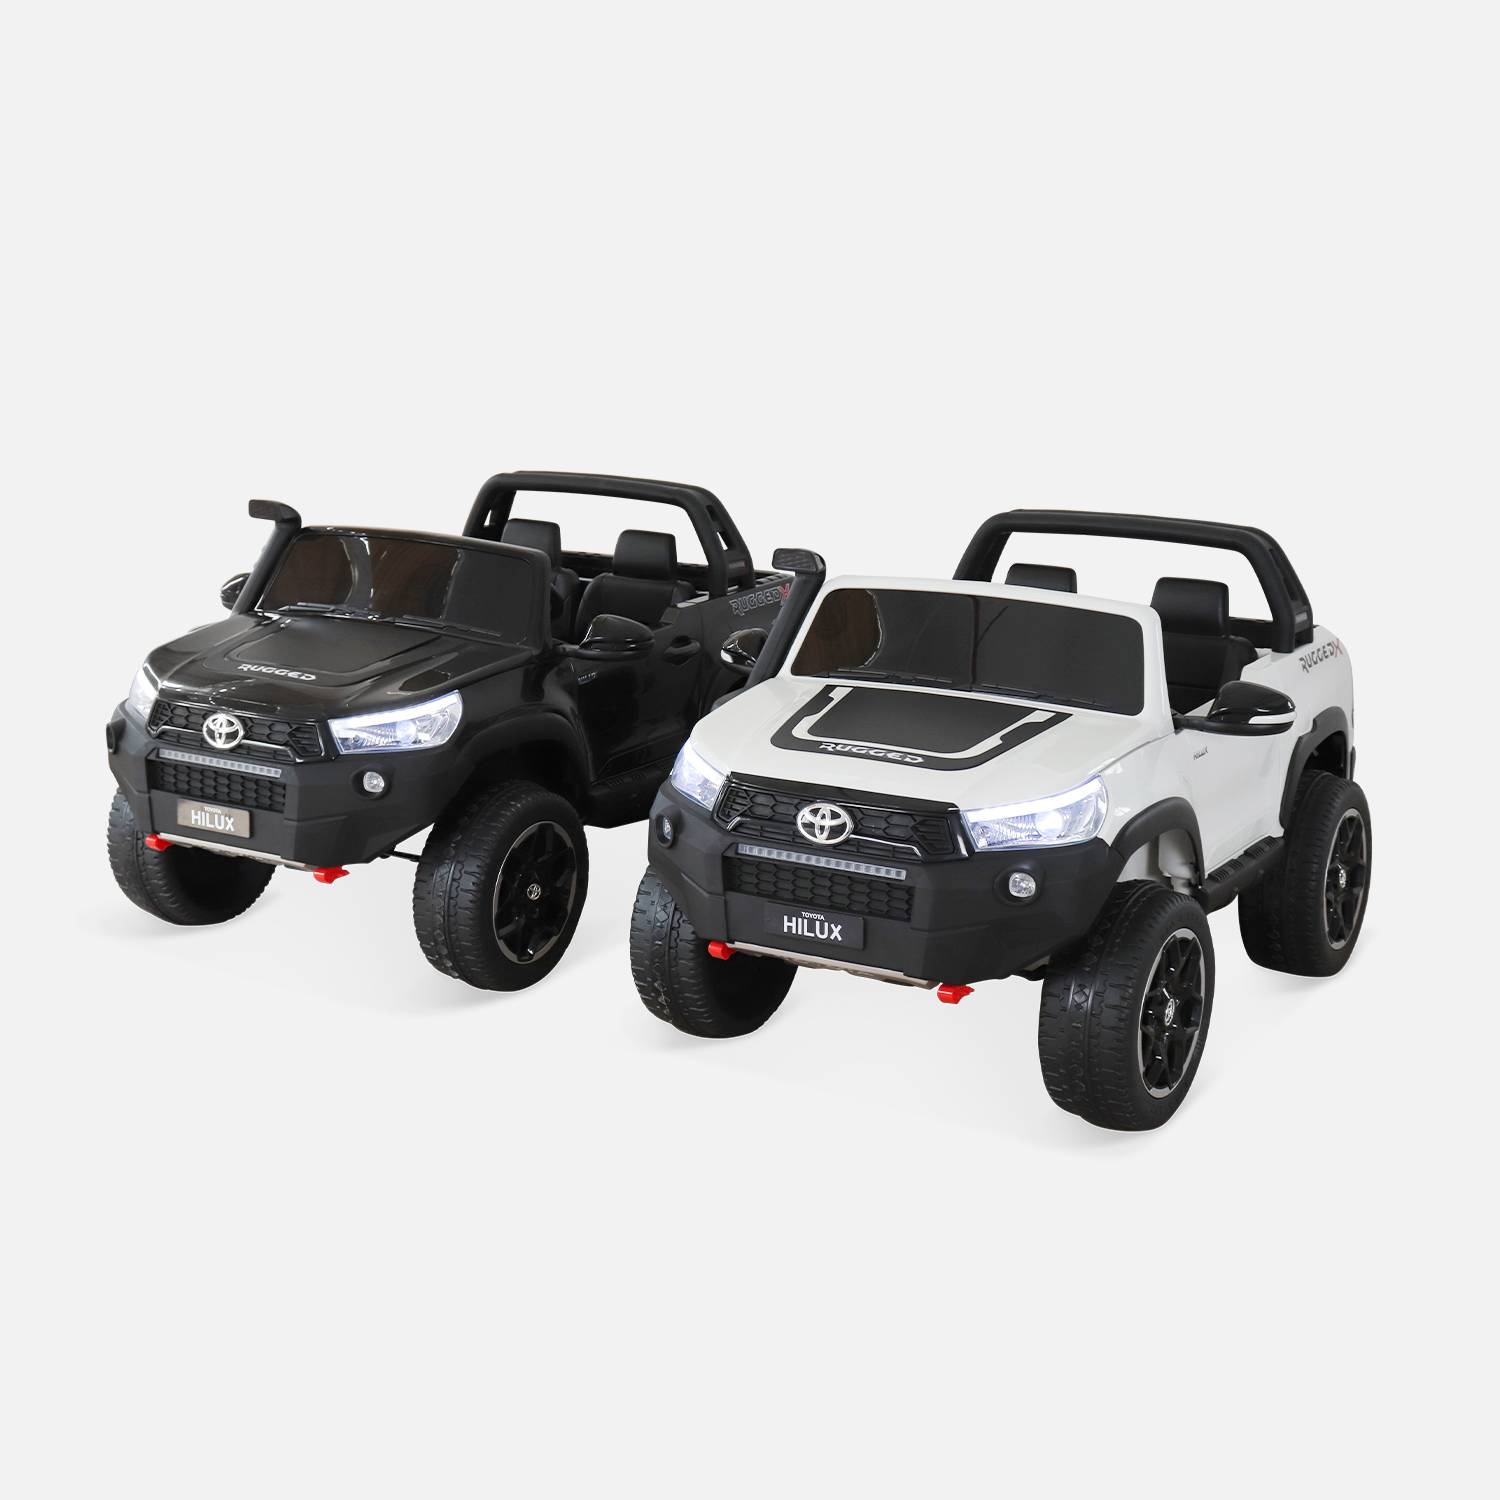 TOYOTA Hilux 2 roues motrices noire, voiture électrique 12V, 2 places, pour enfants avec autoradio, télécommande, MP3, port USB / carte SD, prise jack et phares fonctionnels Photo9